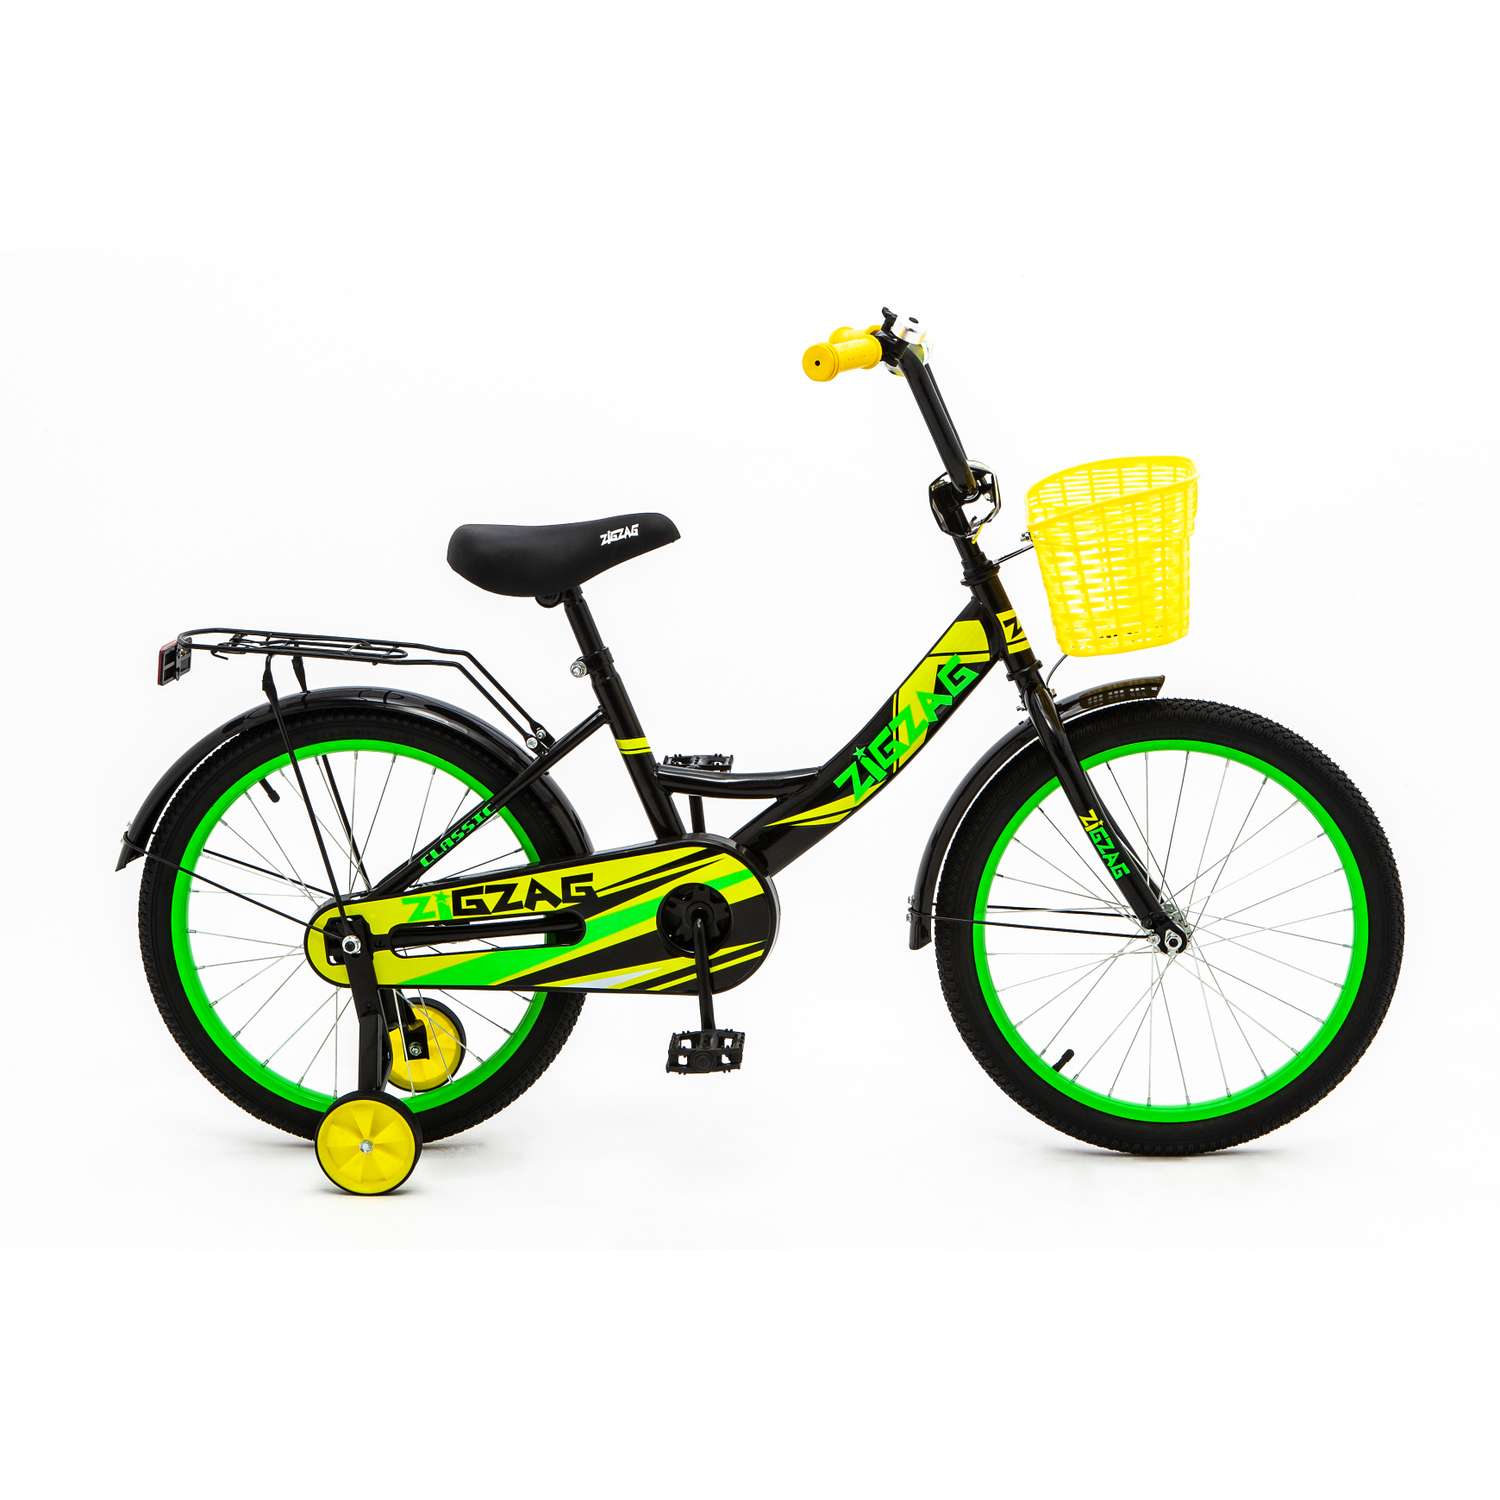 Велосипед ZigZag CLASSIC черный желтый зеленый 20 дюймов - фото 1